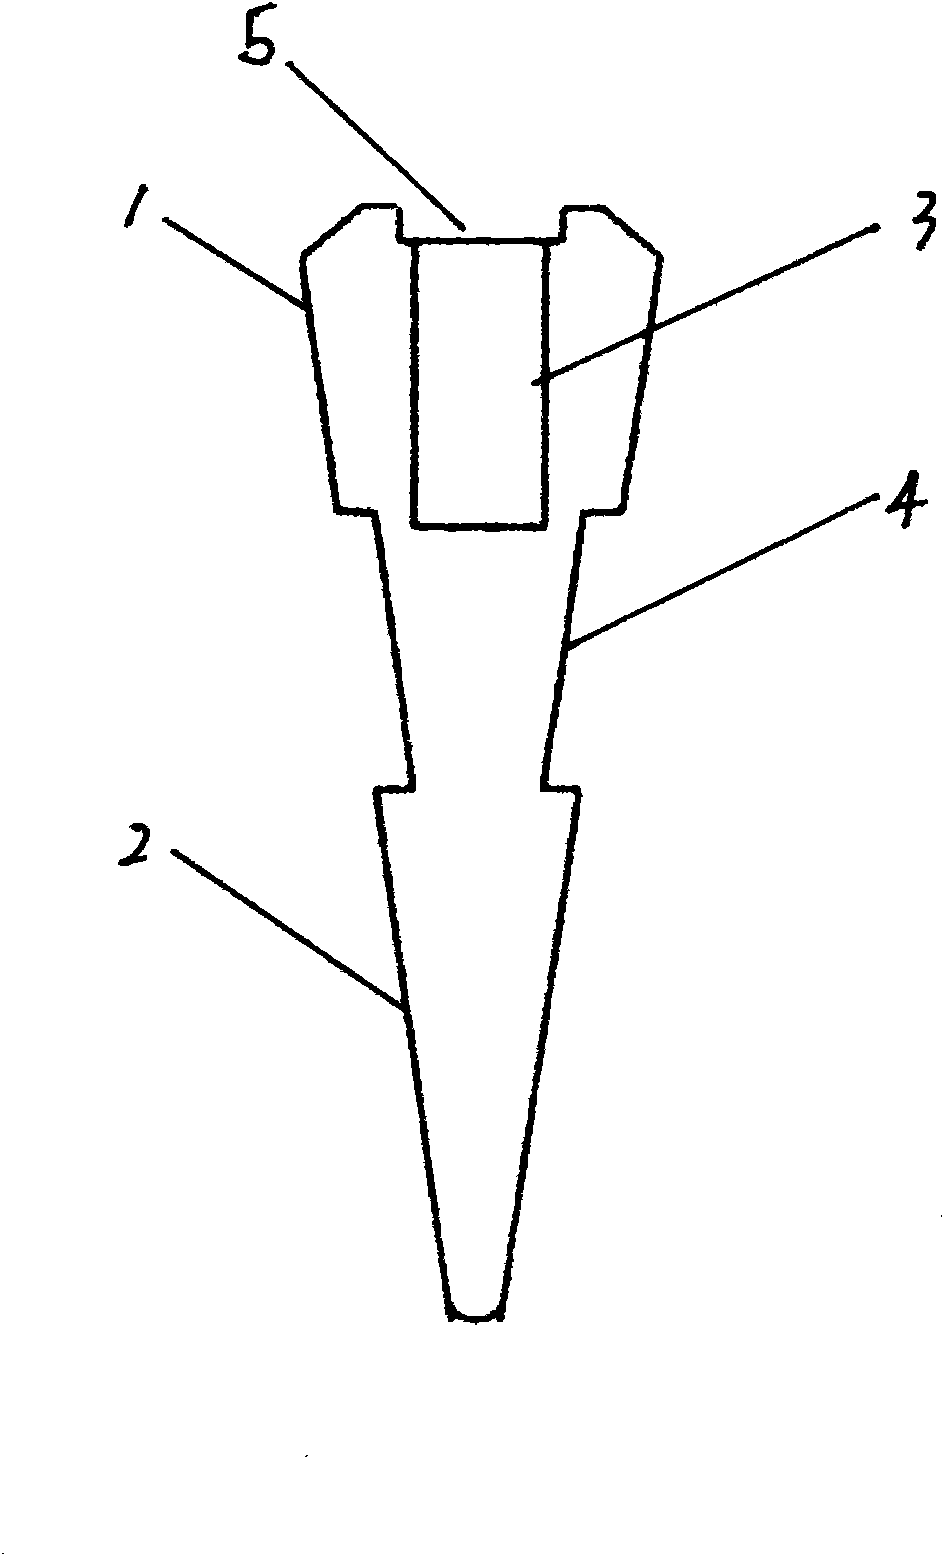 Pyramidal sealing framework